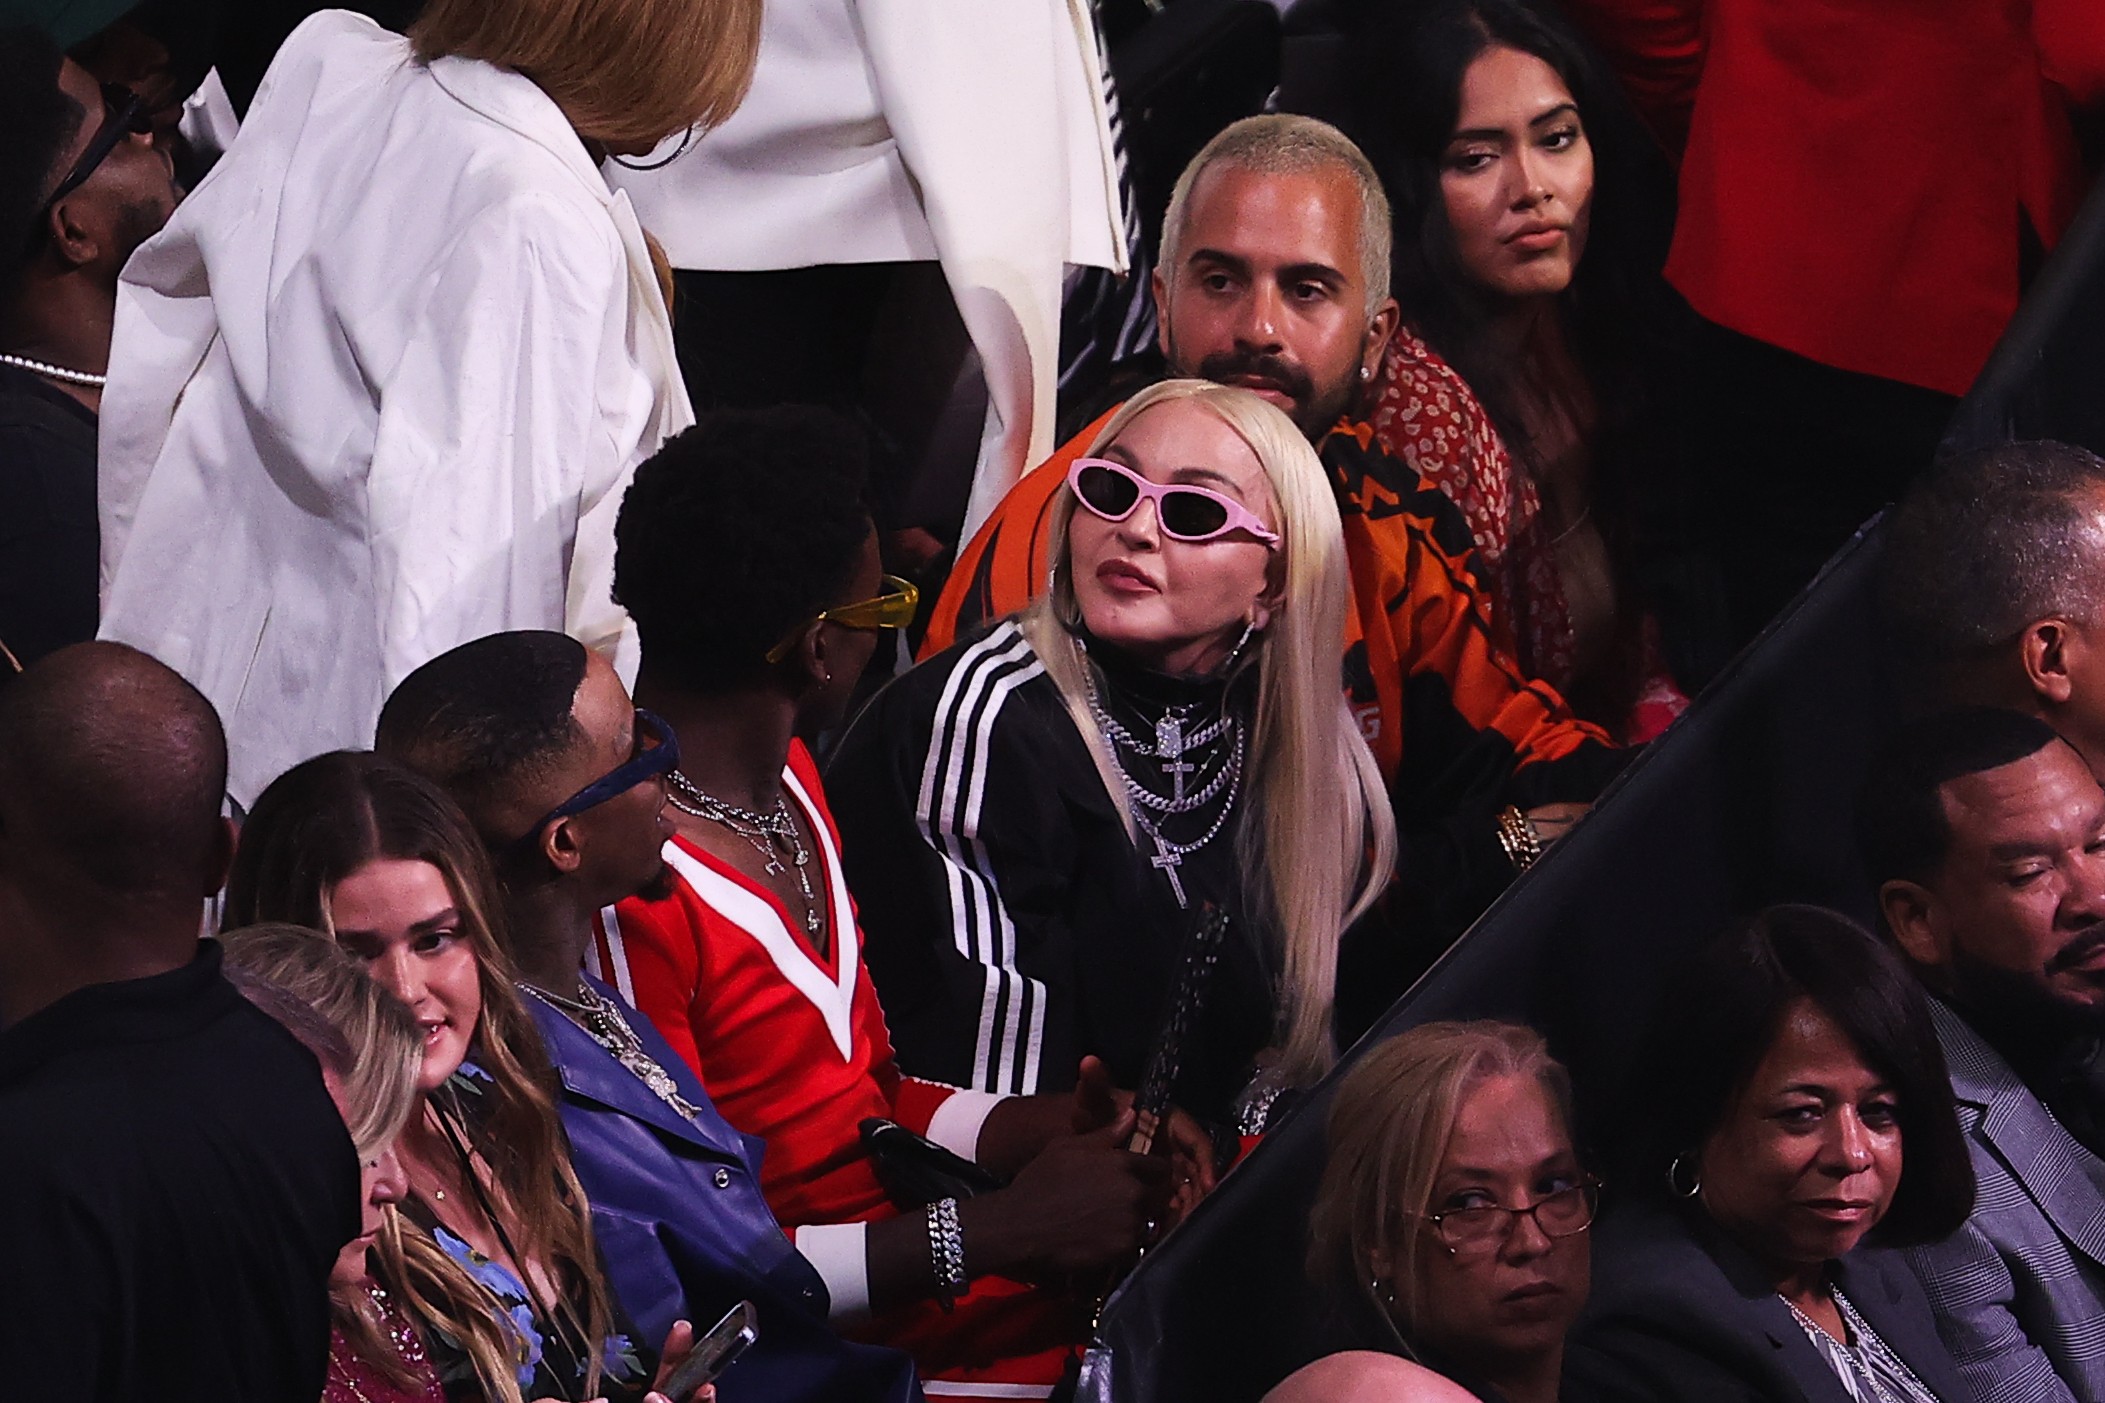 Madonna foi fotografada na arena em Nova York (Foto: Getty Images)